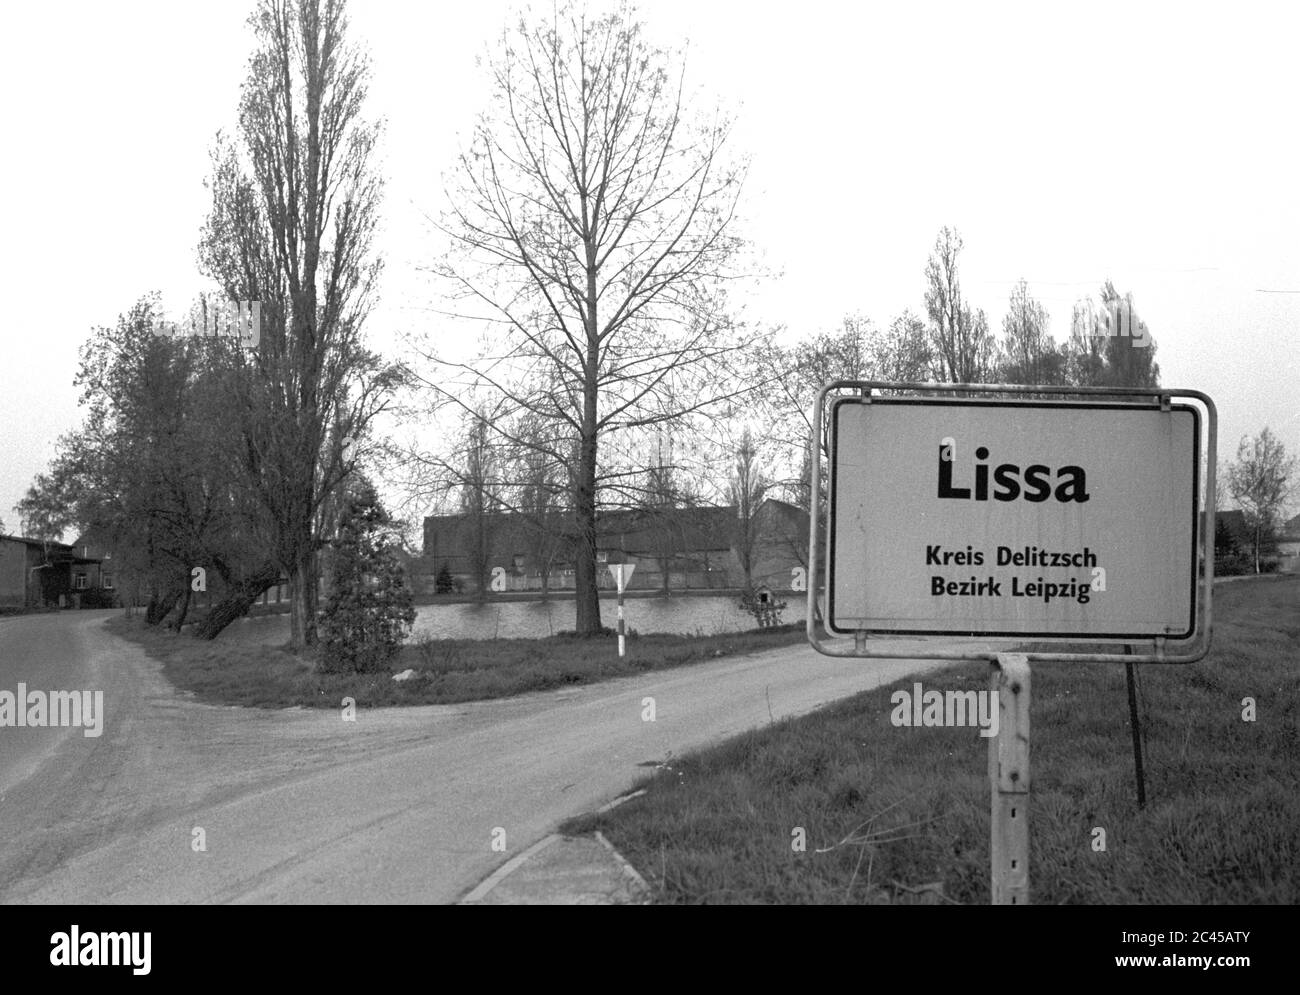 30 novembre 1984, Sassonia, Paschwitz: Su un cartello con il nome di una località si trova Lissa, distretto di Delitzsch, distretto di Lipsia. Al villaggio stagno la strada si divide. Data esatta della registrazione non nota. Foto: Volkmar Heinz/dpa-Zentralbild/ZB Foto Stock